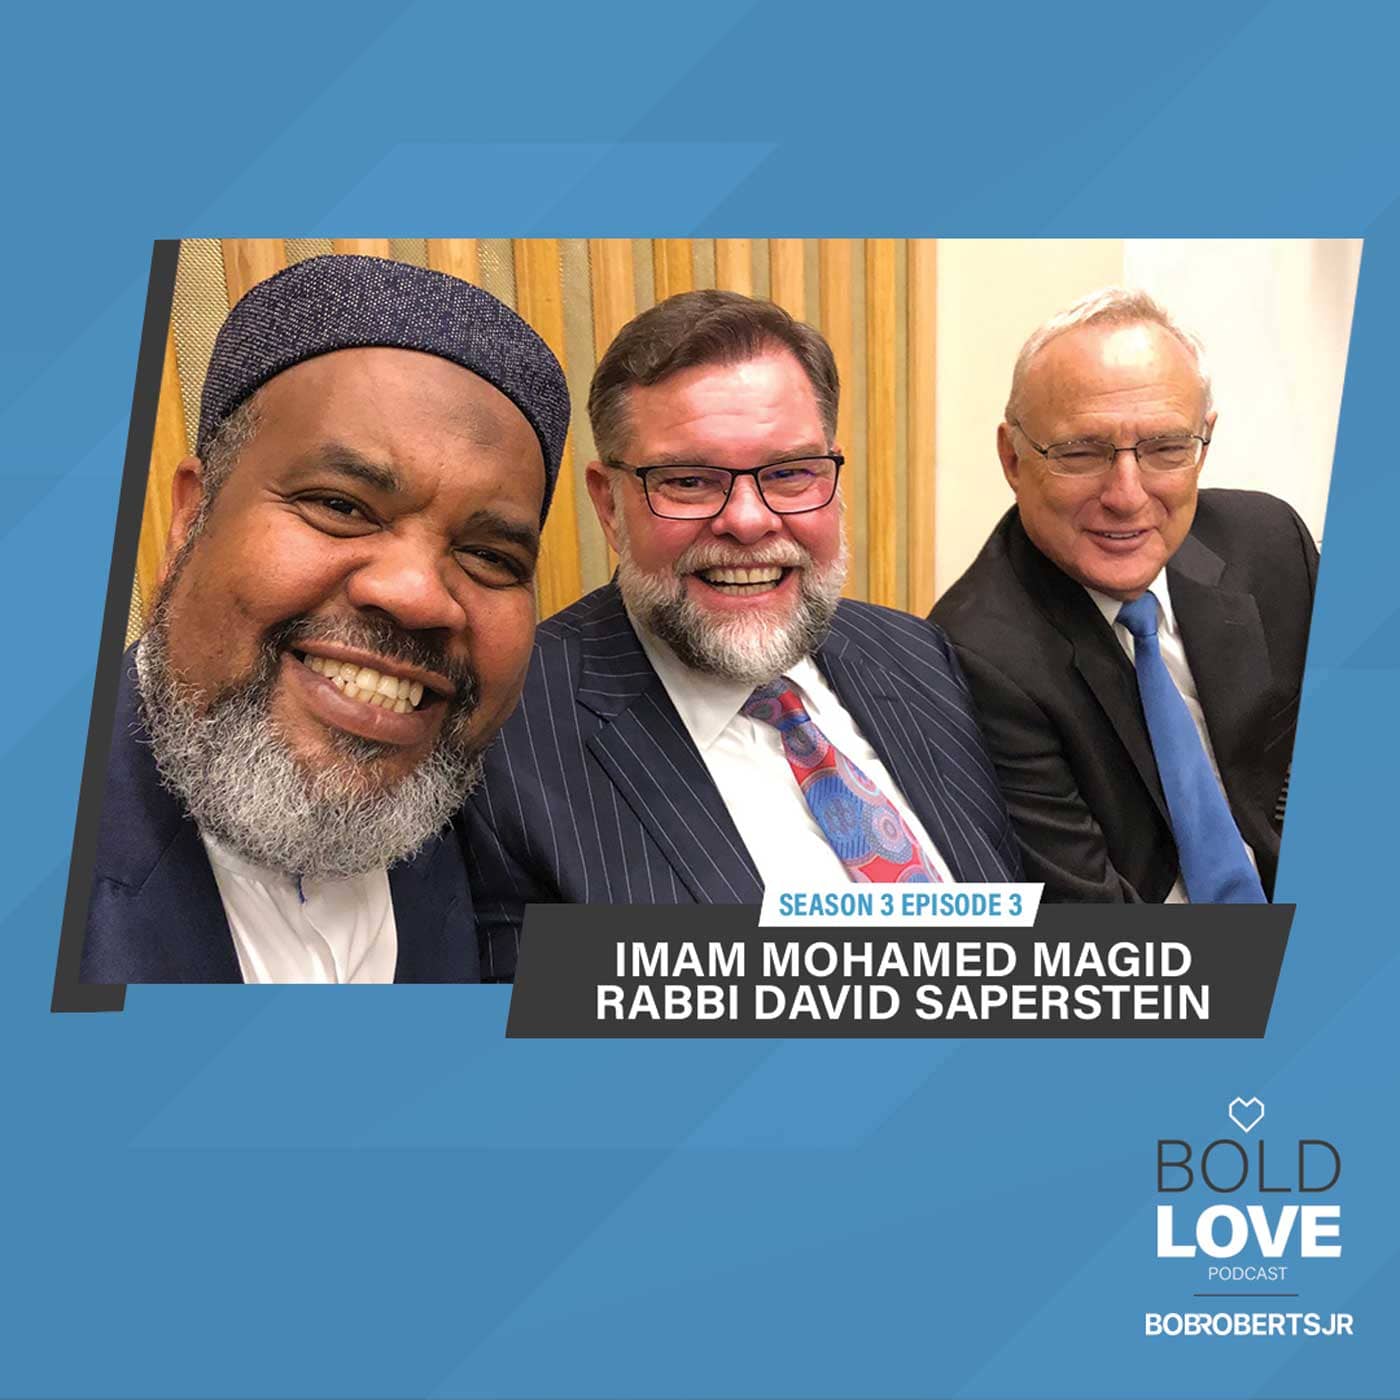 S3E3 – Amb. Rabbi David Saperstein & Imam Mohamed Magid | Unlikely Friendships